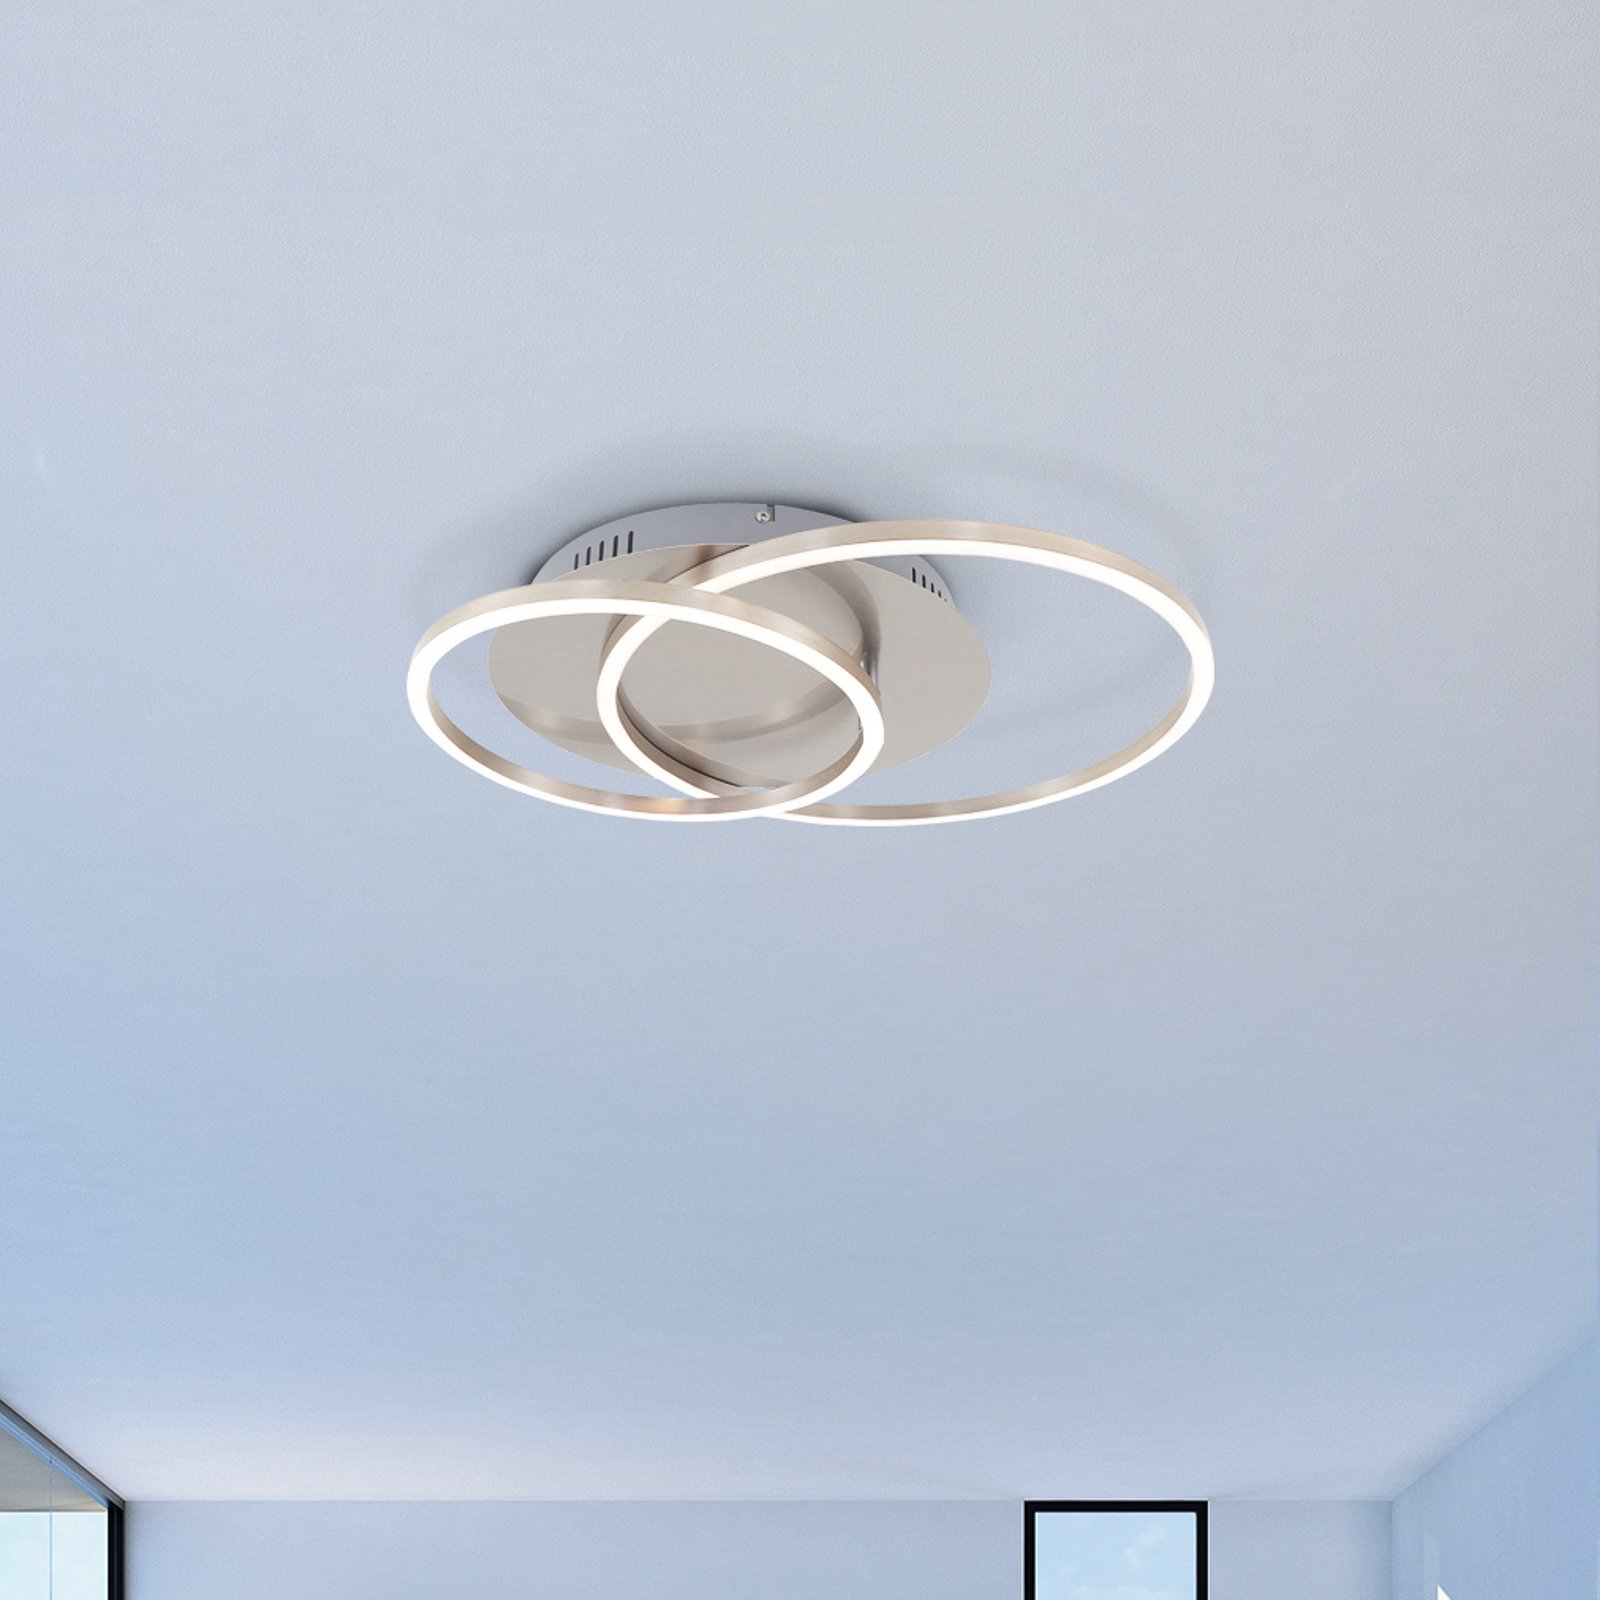 LED stropno svjetlo uokviruje dva prstena, rotirajuća